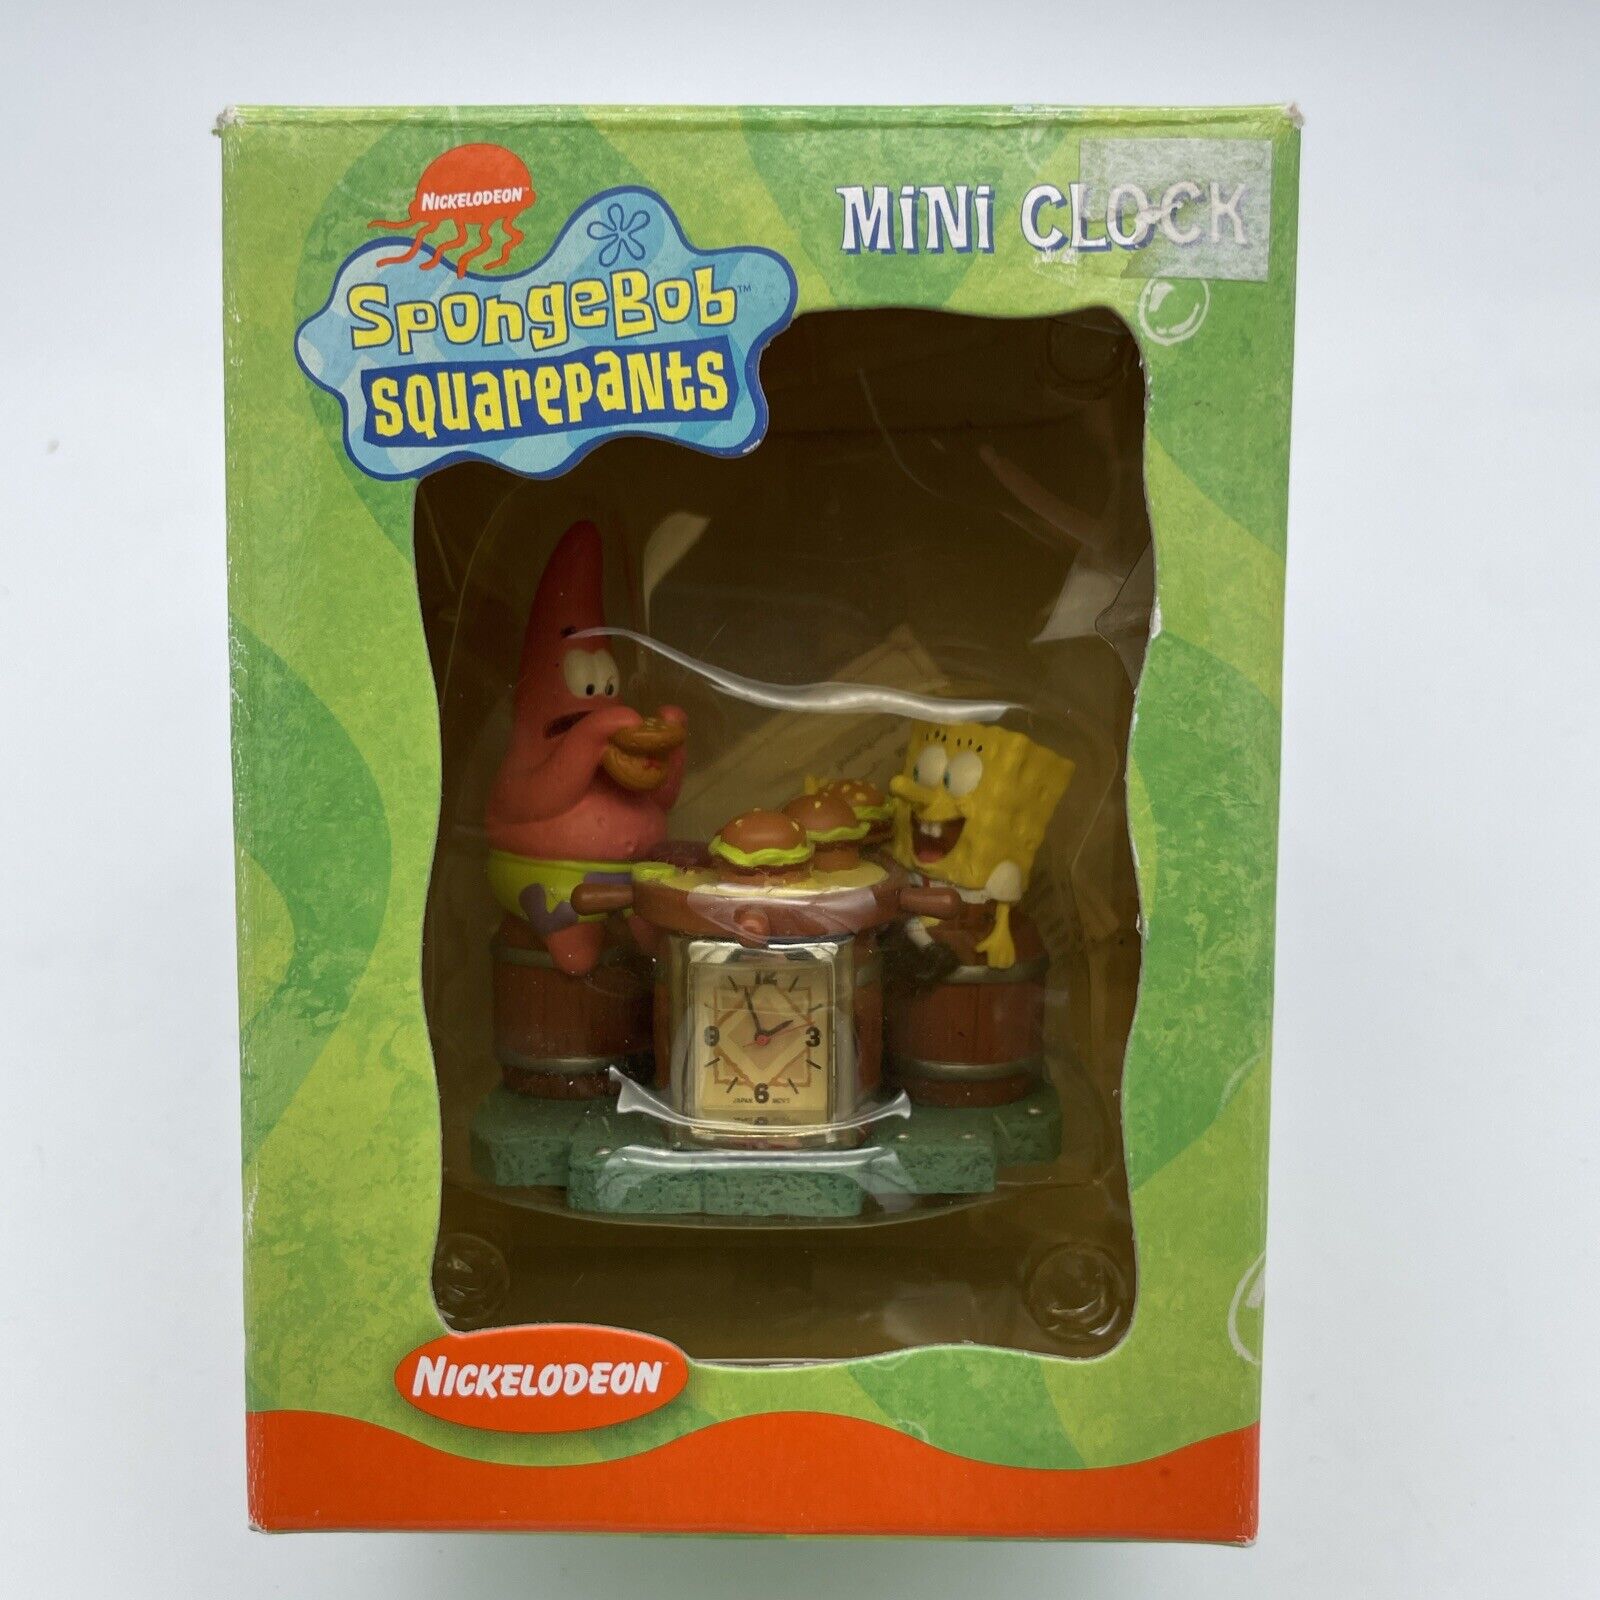 Spongebob Squarepants Clock Mini Desk Nickelodeon 2002 Eating Cheeseburgers